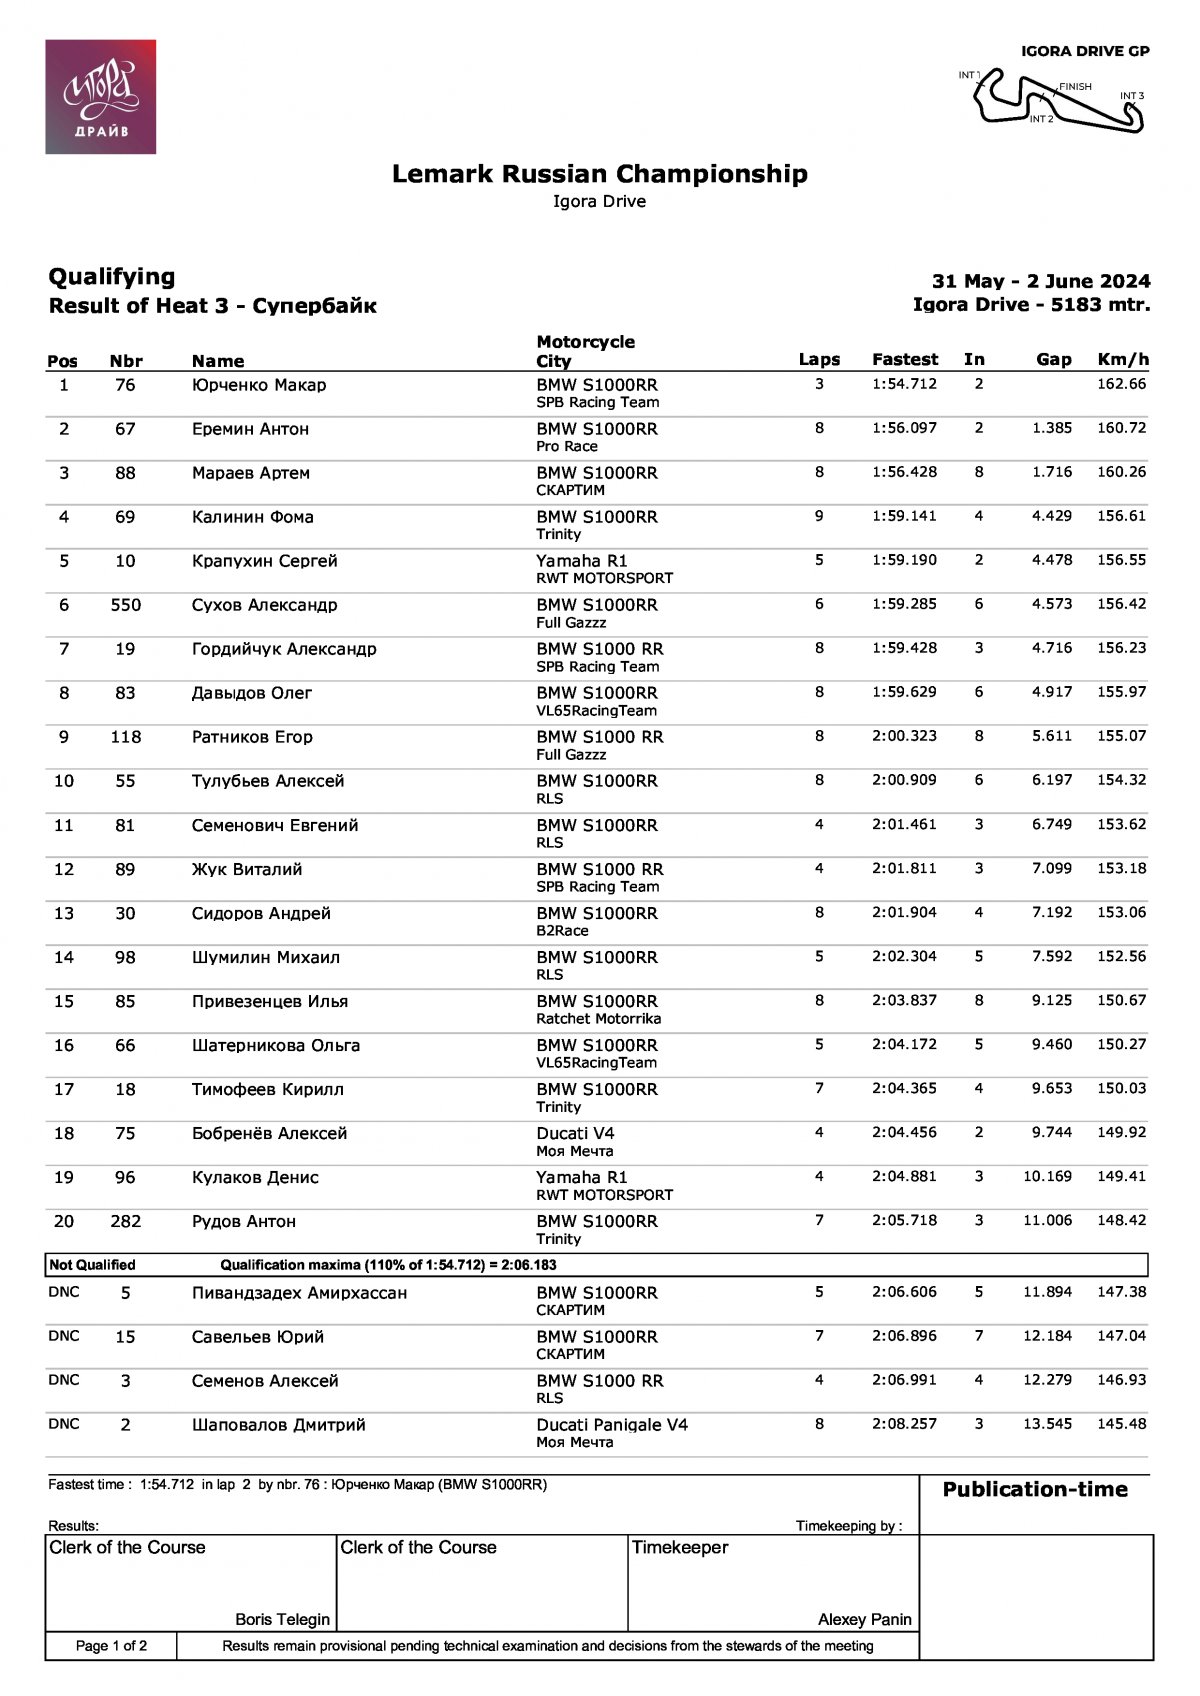 LEMARC Чемпионат России по кольцевым гонкам: Результаты квалификации в классе Супербайк